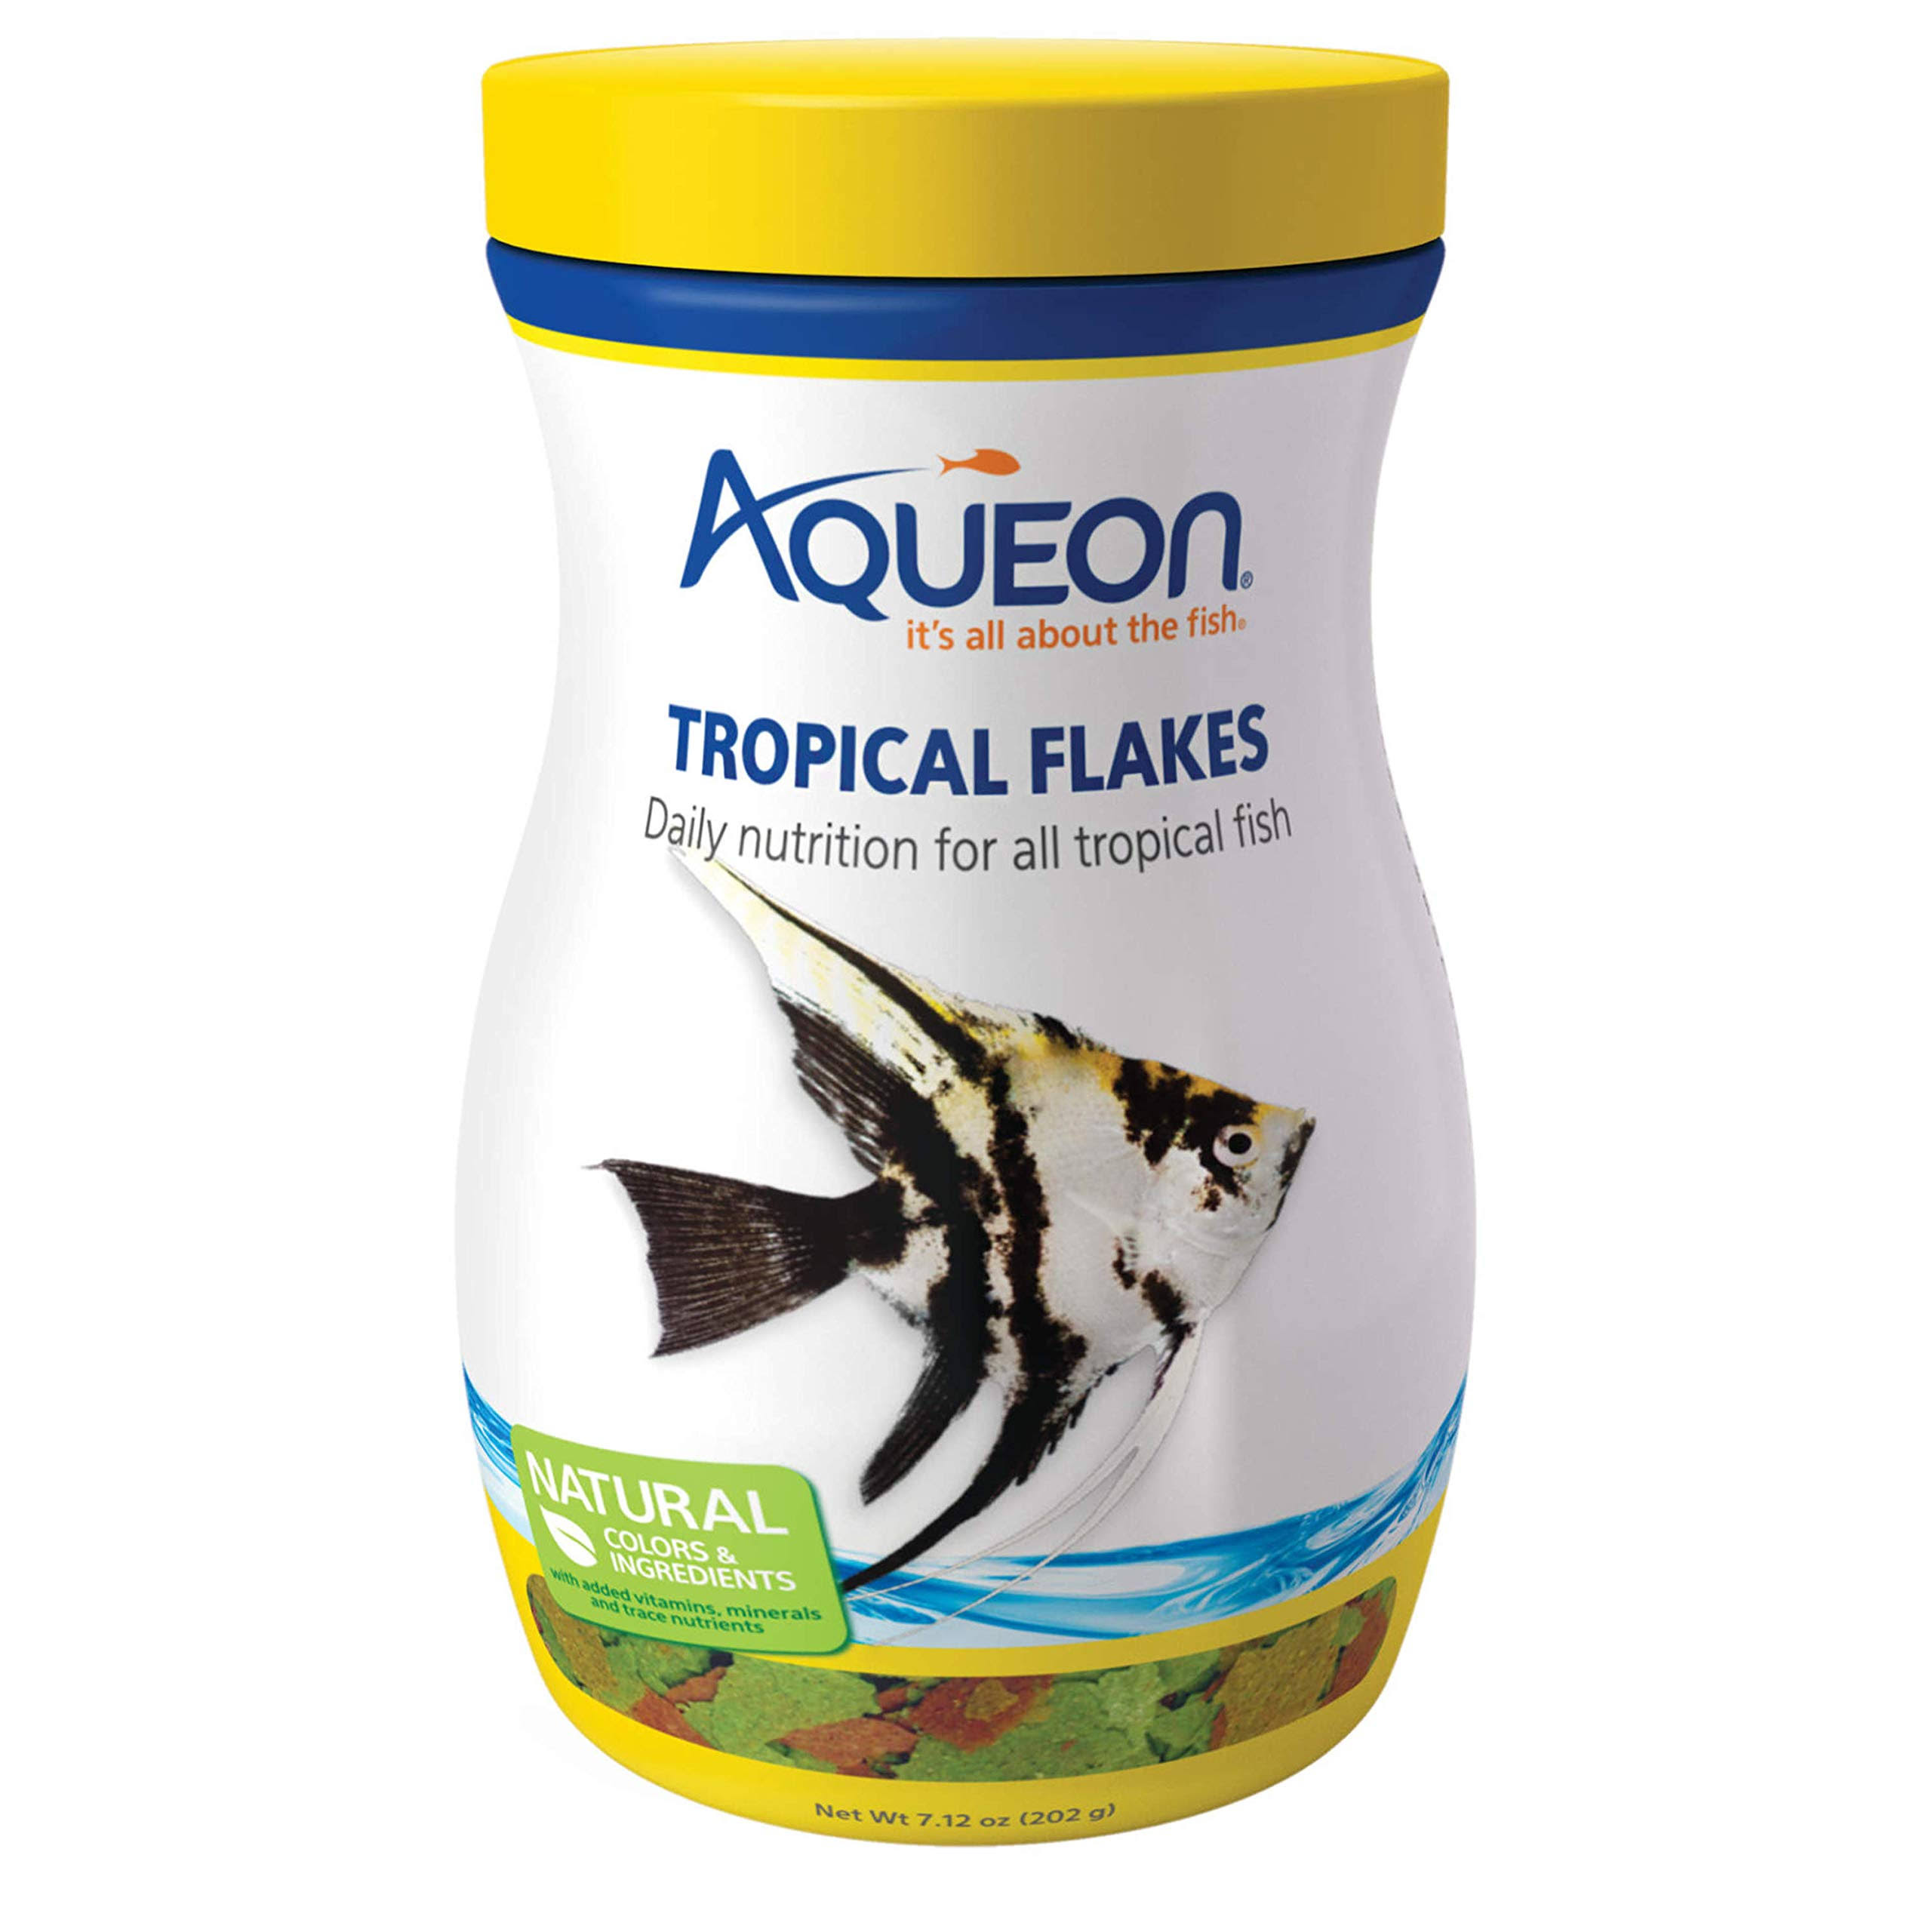 Aqueon Tropical Flakes Natural Fish Food - 7.12oz